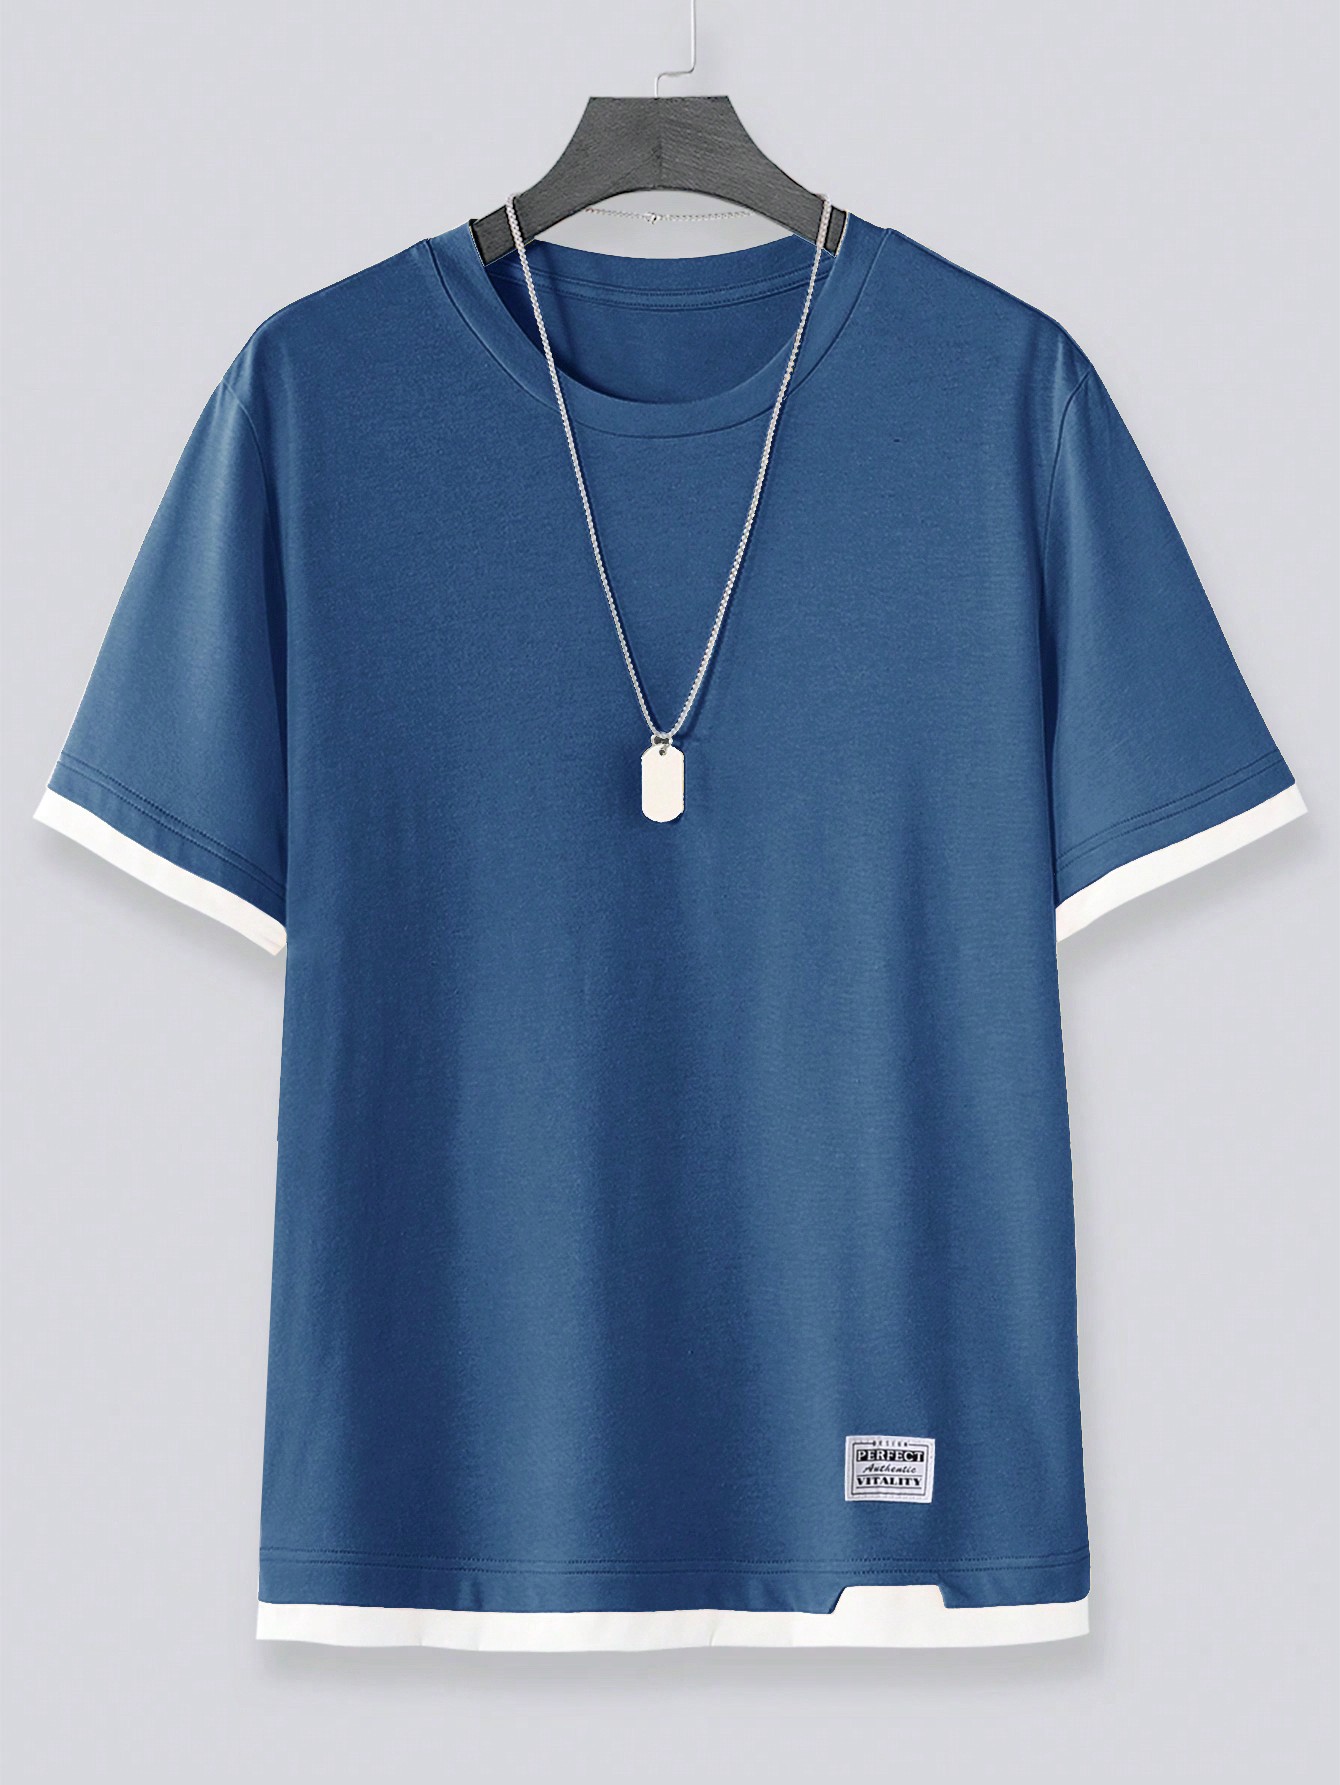 Мужская футболка Manfinity Hypemode с цветными блоками и контрастной строчкой, пыльный синий футболка мужская с контрастной отделкой madison 170 оранжевый белый размер xl